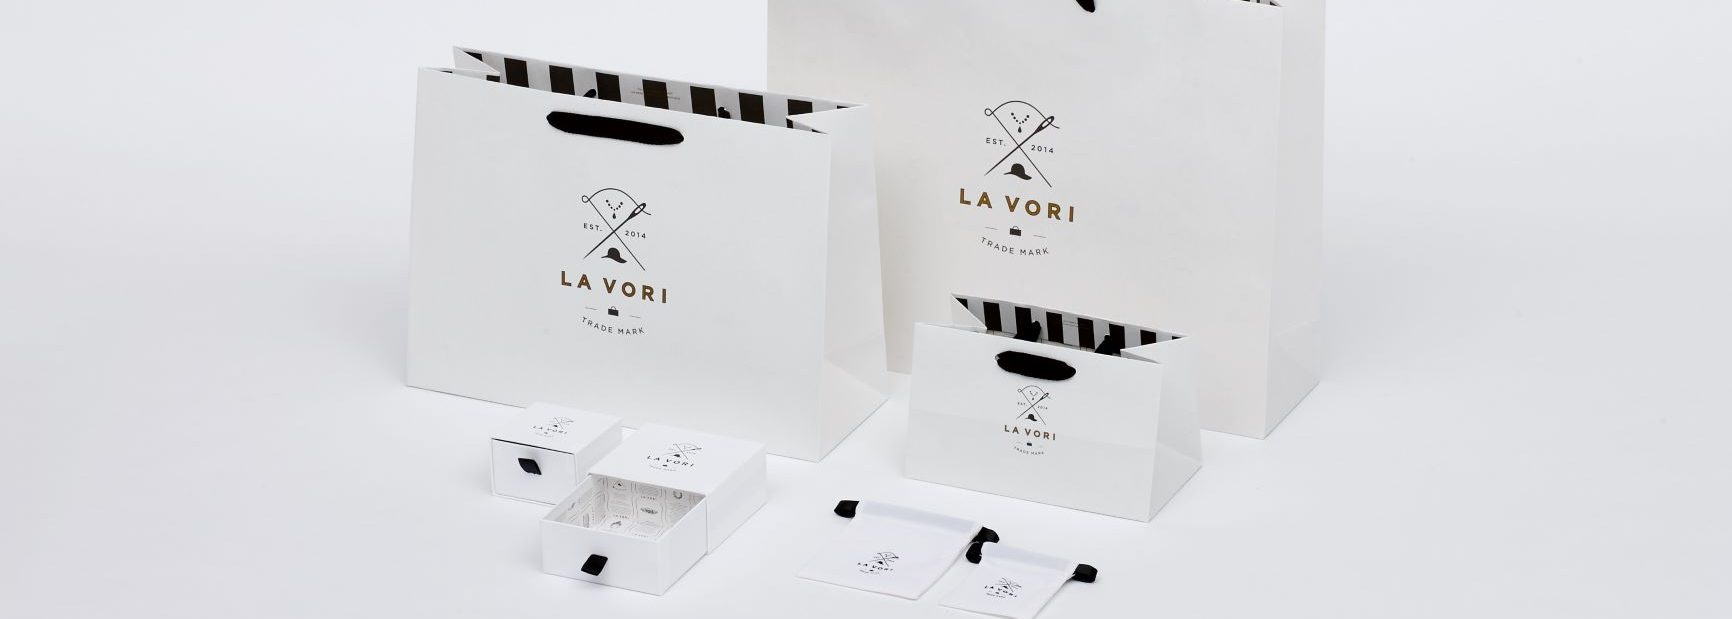 雑貨ブランド「ラ ヴォーリ」の店舗販促物のグラフィックデザイン事例